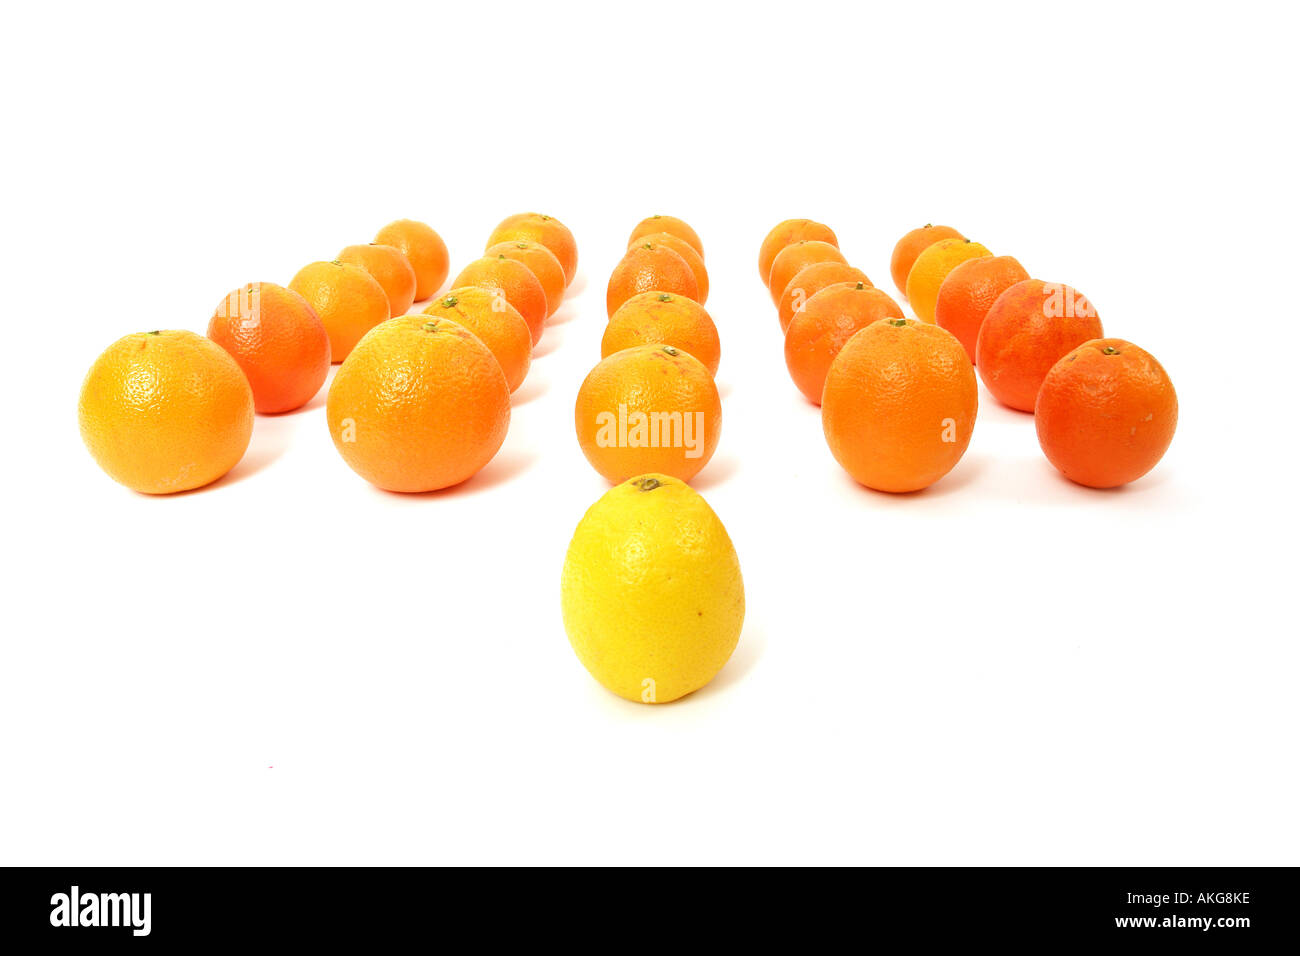 Le citron et les oranges sur un fond blanc symbolisant l'équipe leadership Banque D'Images